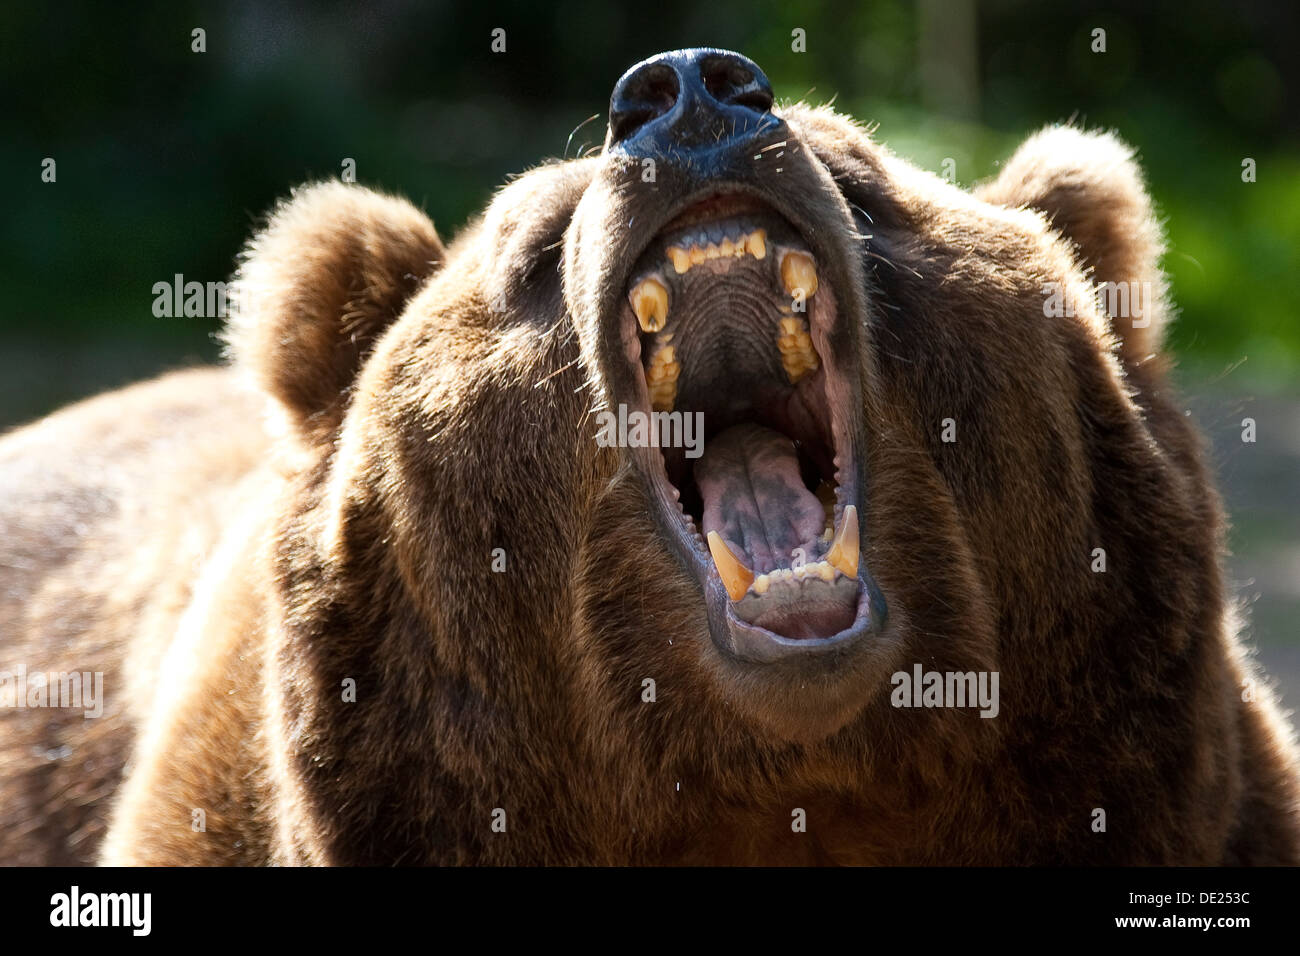 Kodiak Bear, Kodiak orso bruno, Braunbär, Kodiakbär, Braun-Bär, Kodiak-Bär, Bär, Ritratto, Porträt, Ursus arctos middendorffi Foto Stock